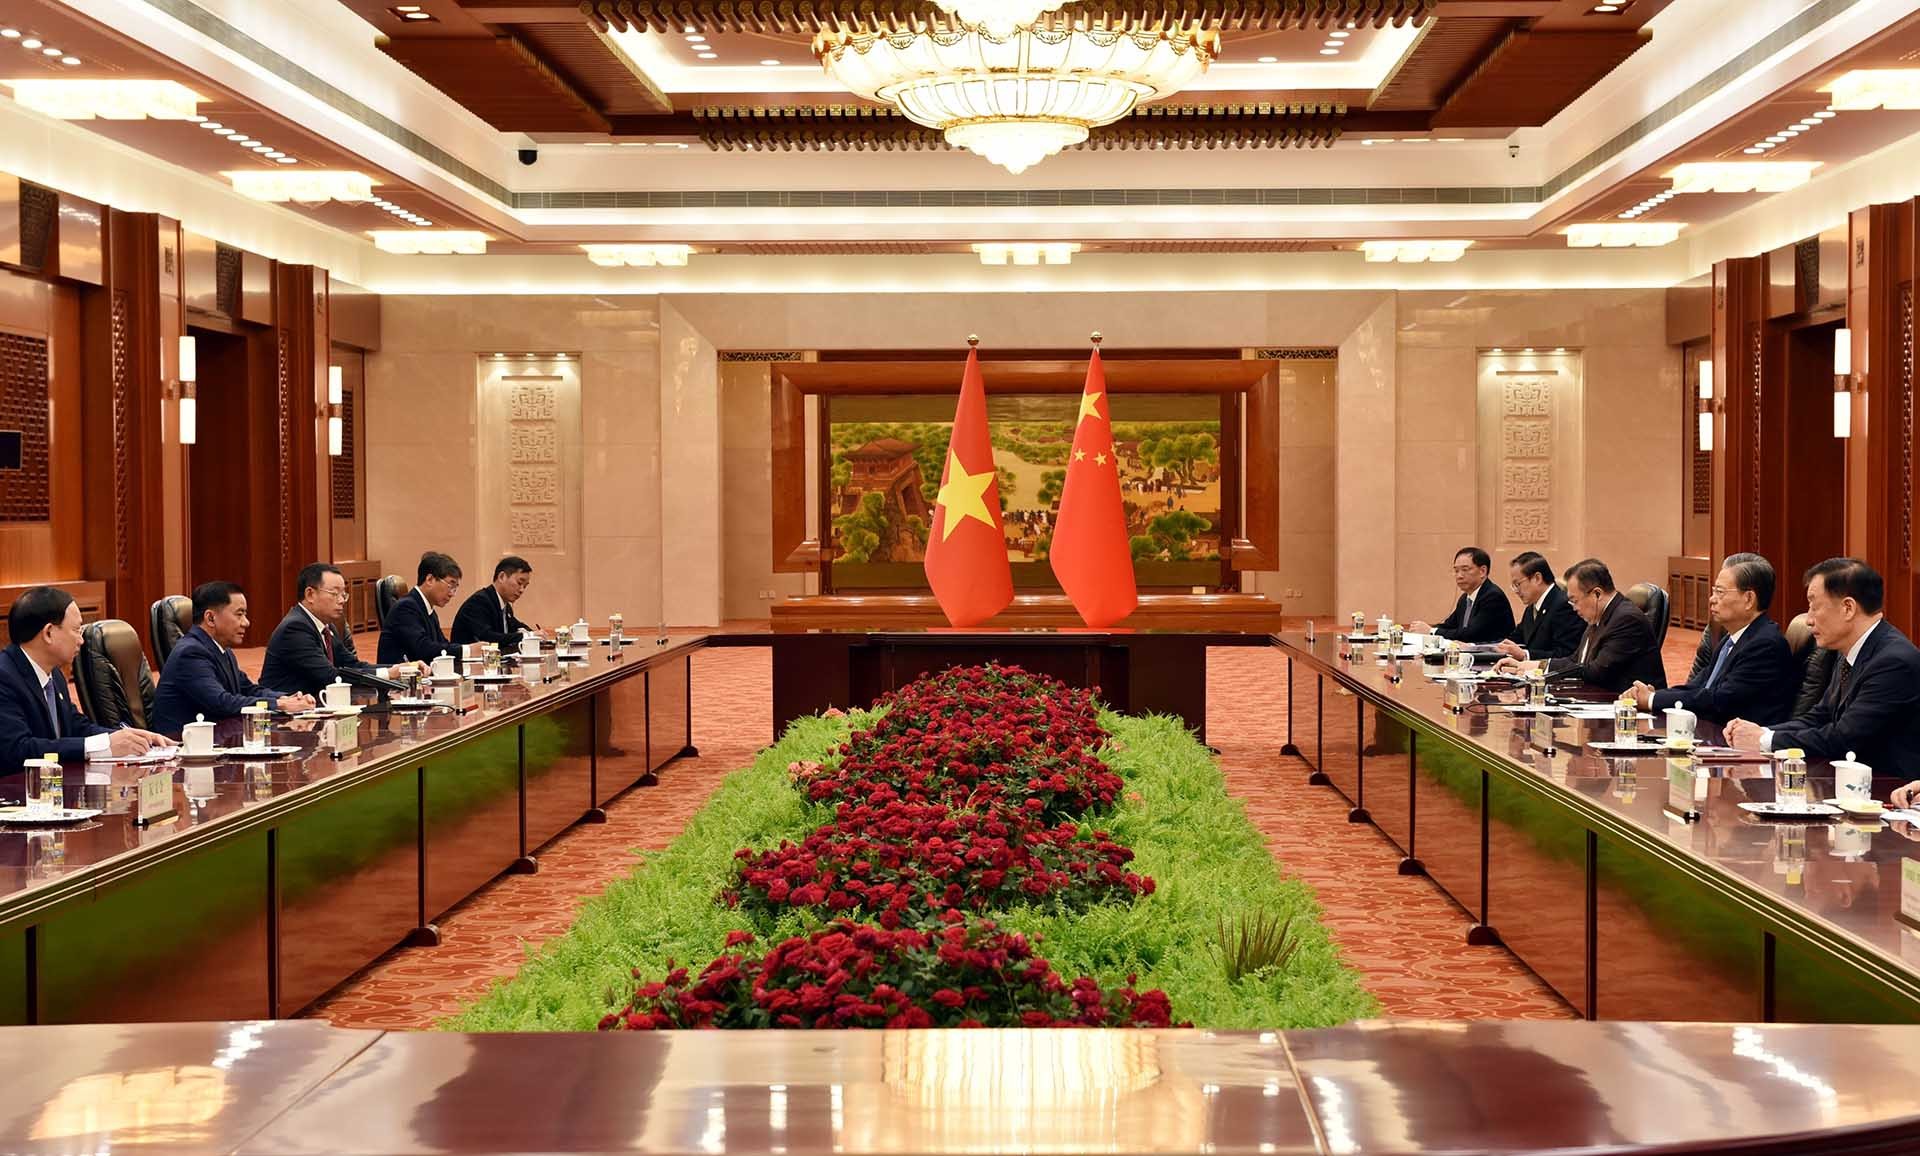 Ủy viên trưởng Nhân đại toàn quốc Trung Quốc hội kiến với Đoàn đại biểu Đảng Cộng sản Việt Nam